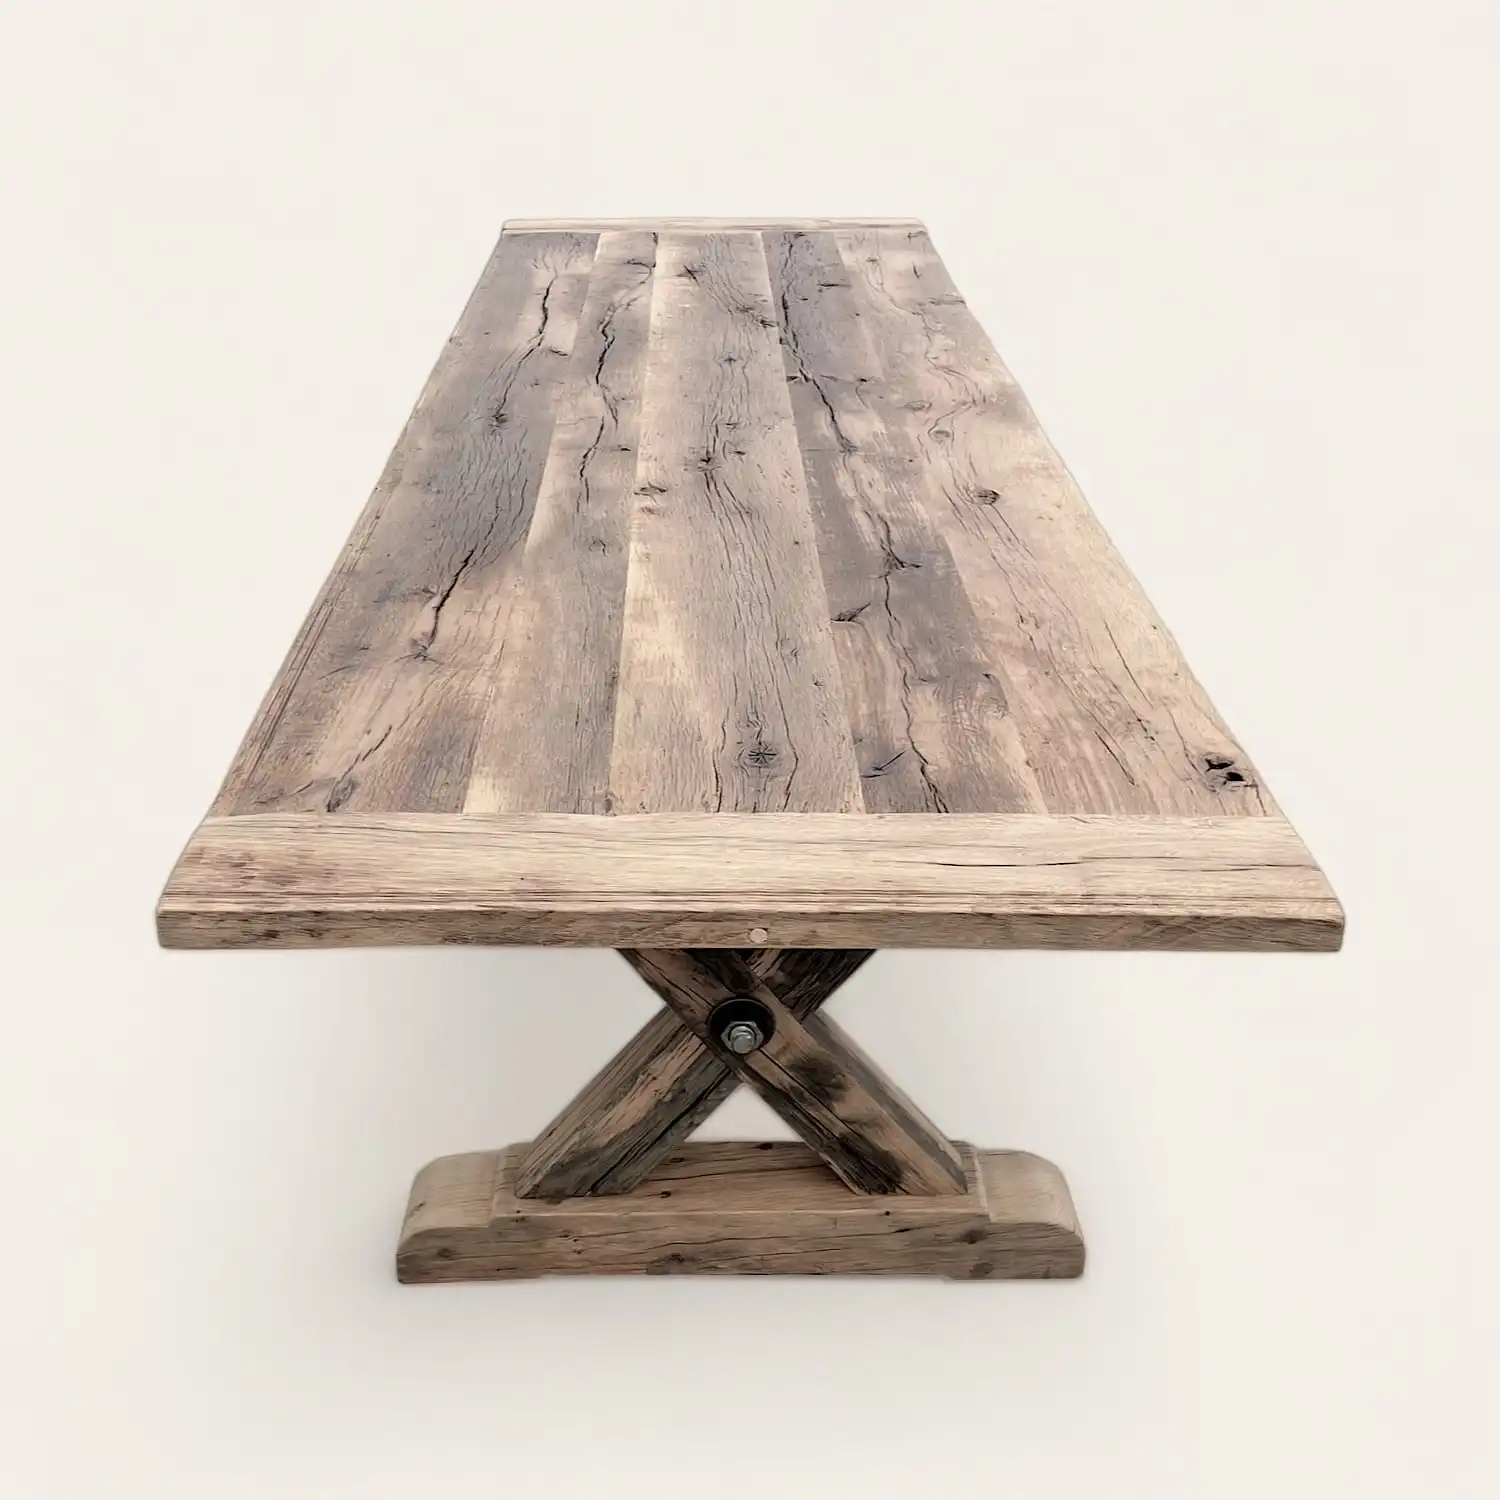  Une table à manger rustique en bois avec une base en croix. 